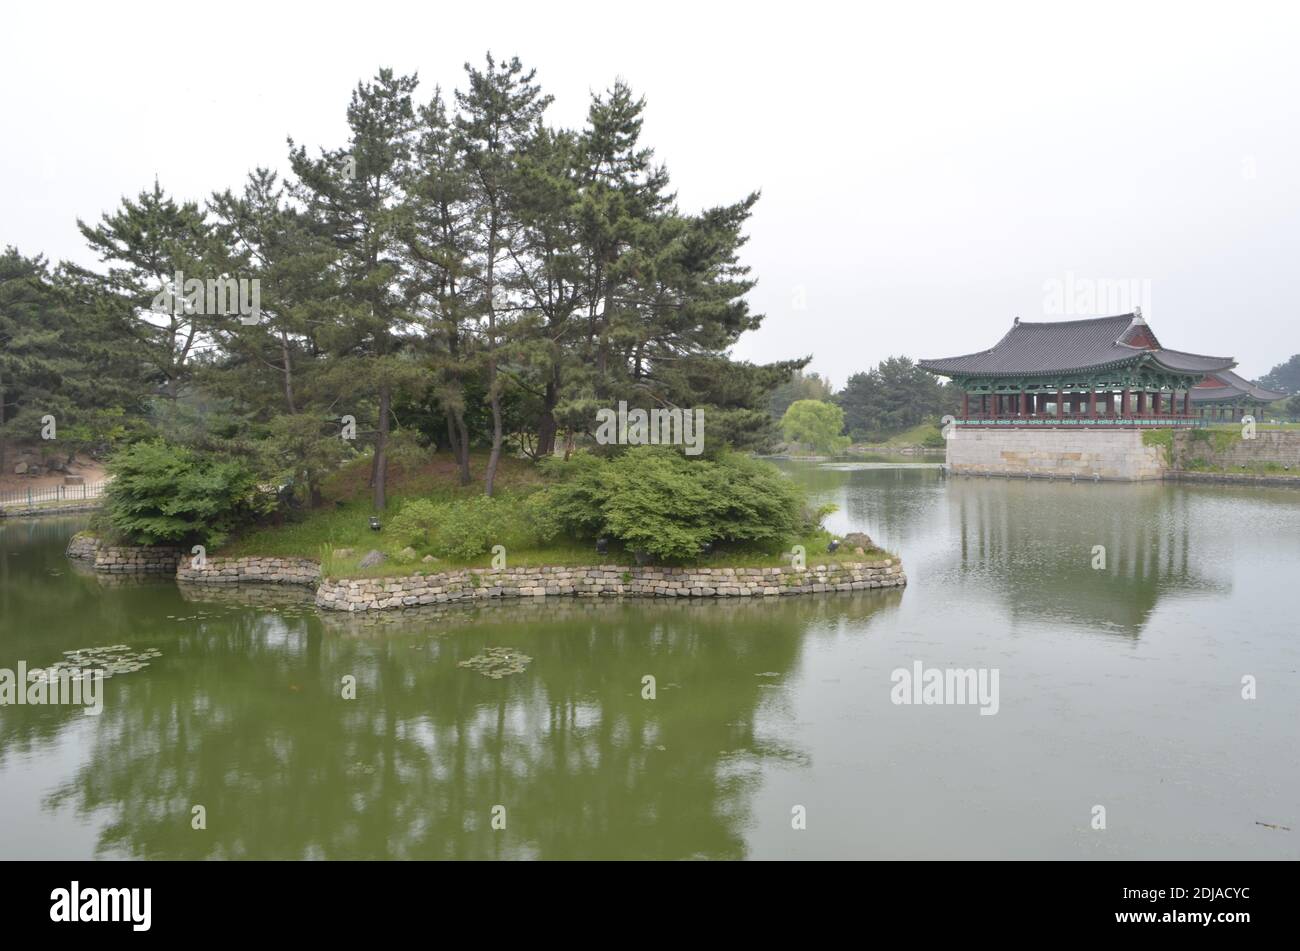 The site of Banwolseong palace of Silla kingdom, Gyeogju, Korea Stock Photo  - Alamy